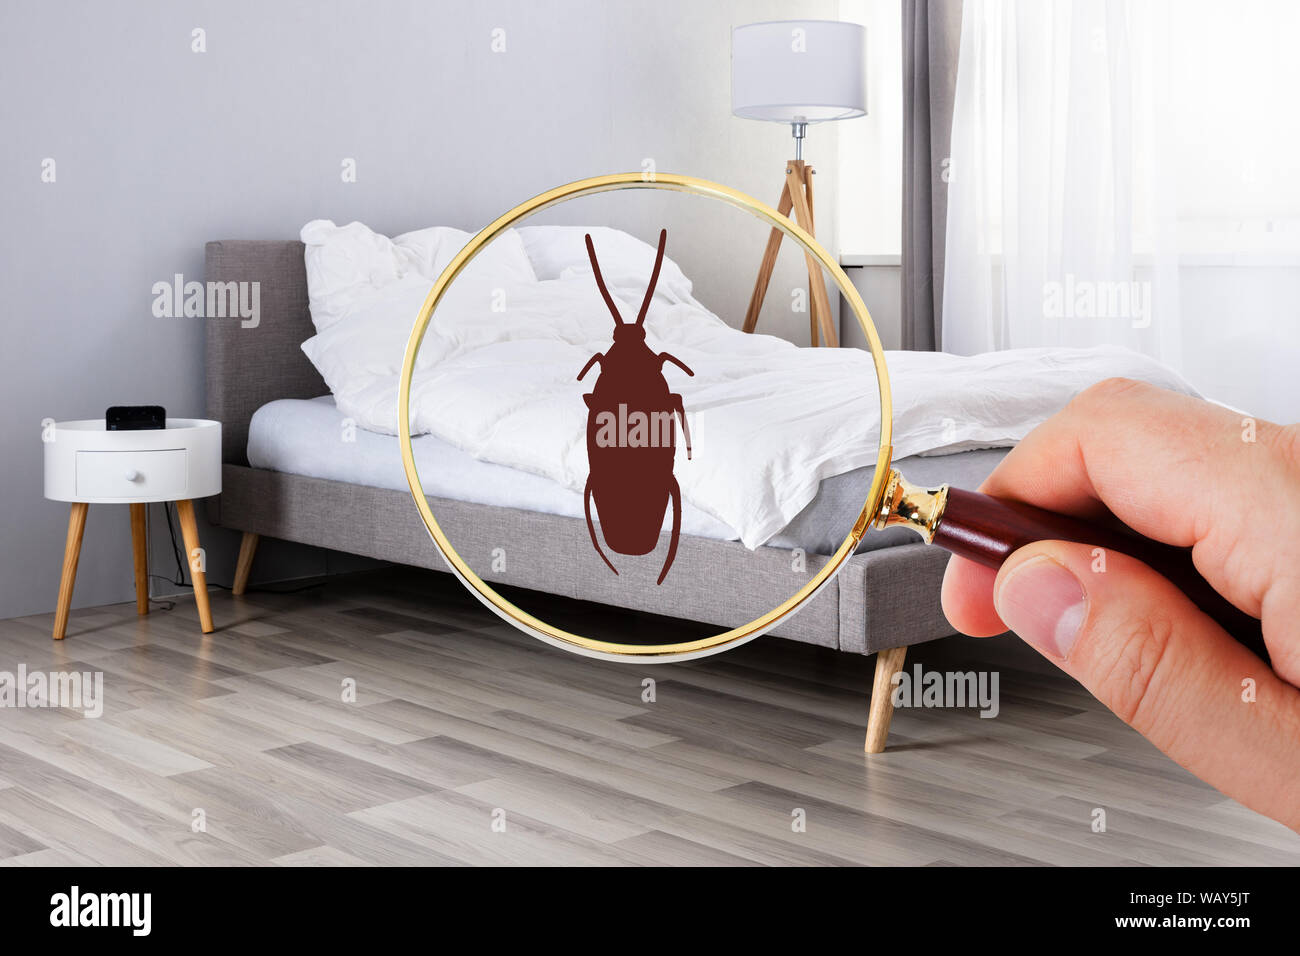 Nahaufnahme einer Person Betrachten Kakerlake mit Lupe auf dem Bett  Stockfotografie - Alamy